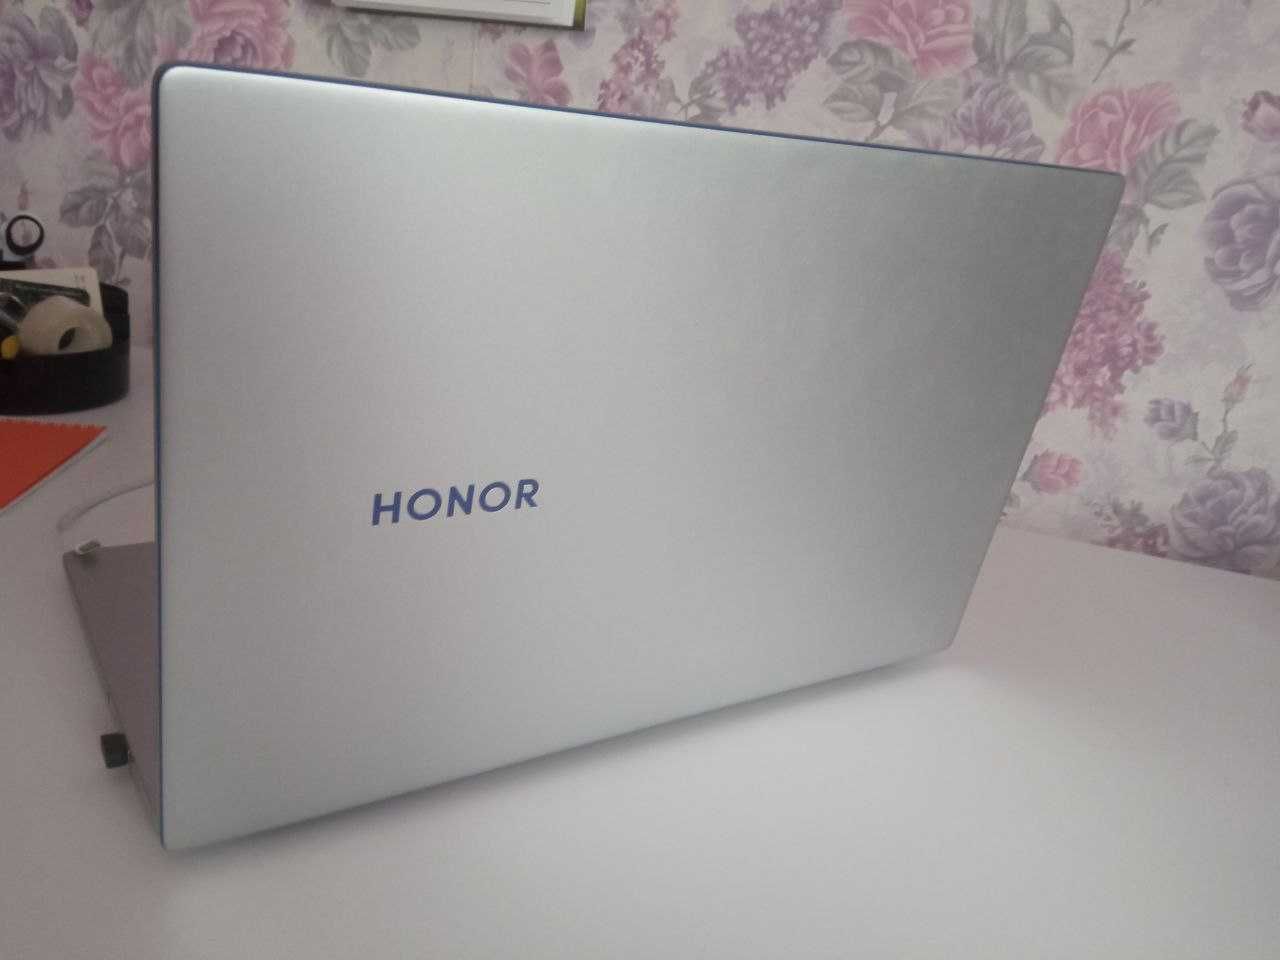 Honor MagicBook 15